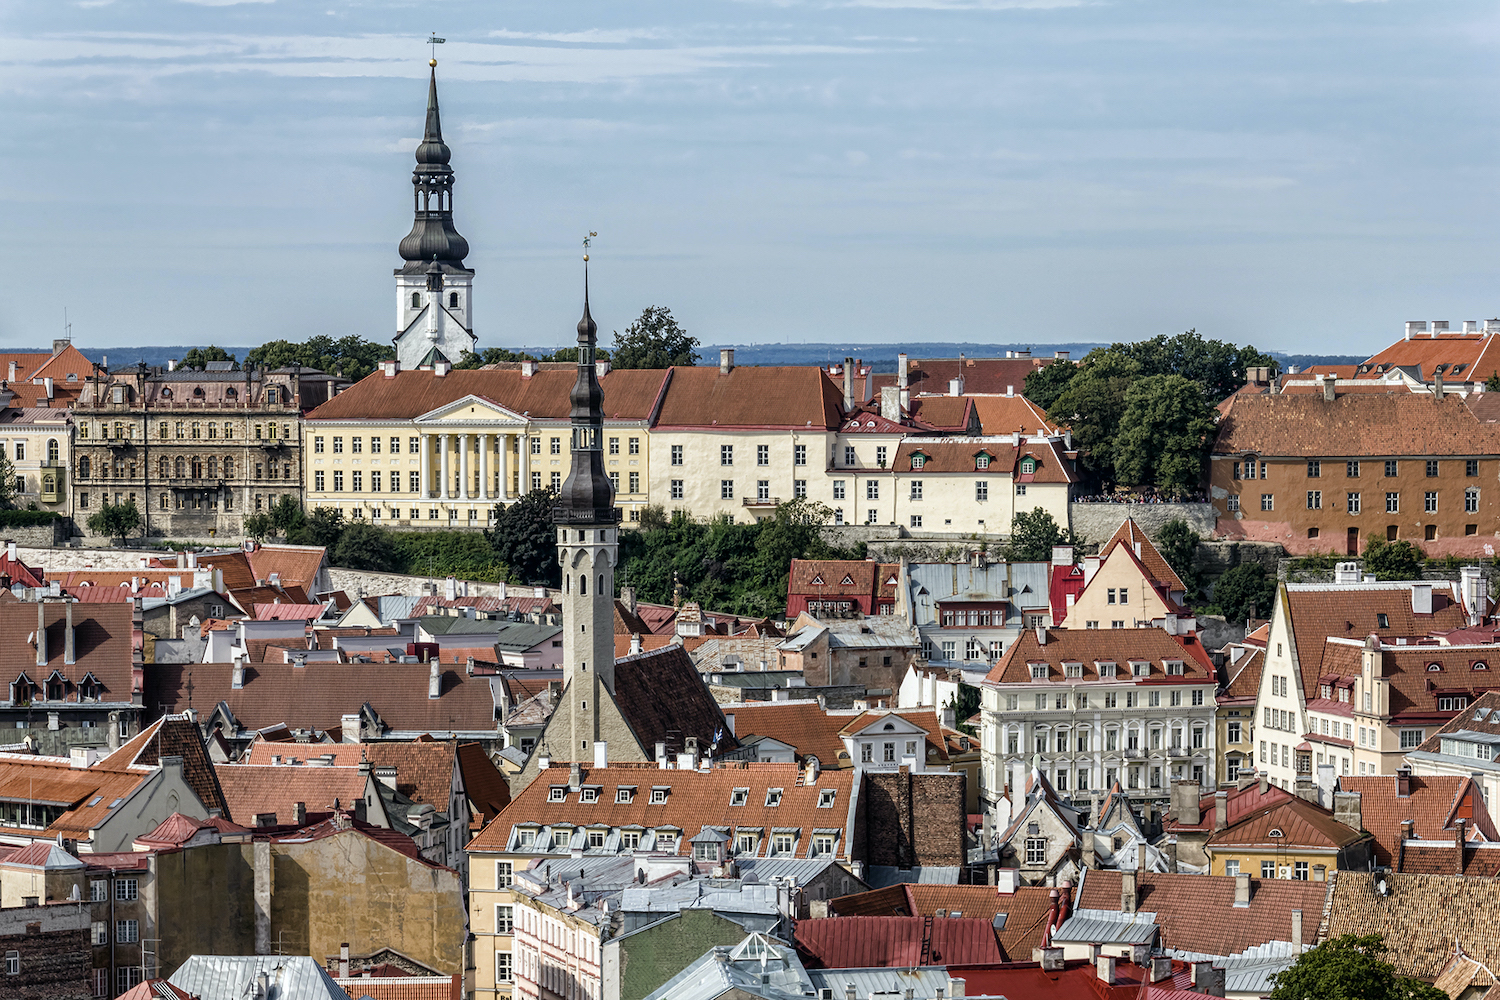 Old Town in Tallinn. Image: Maigi under a CC license